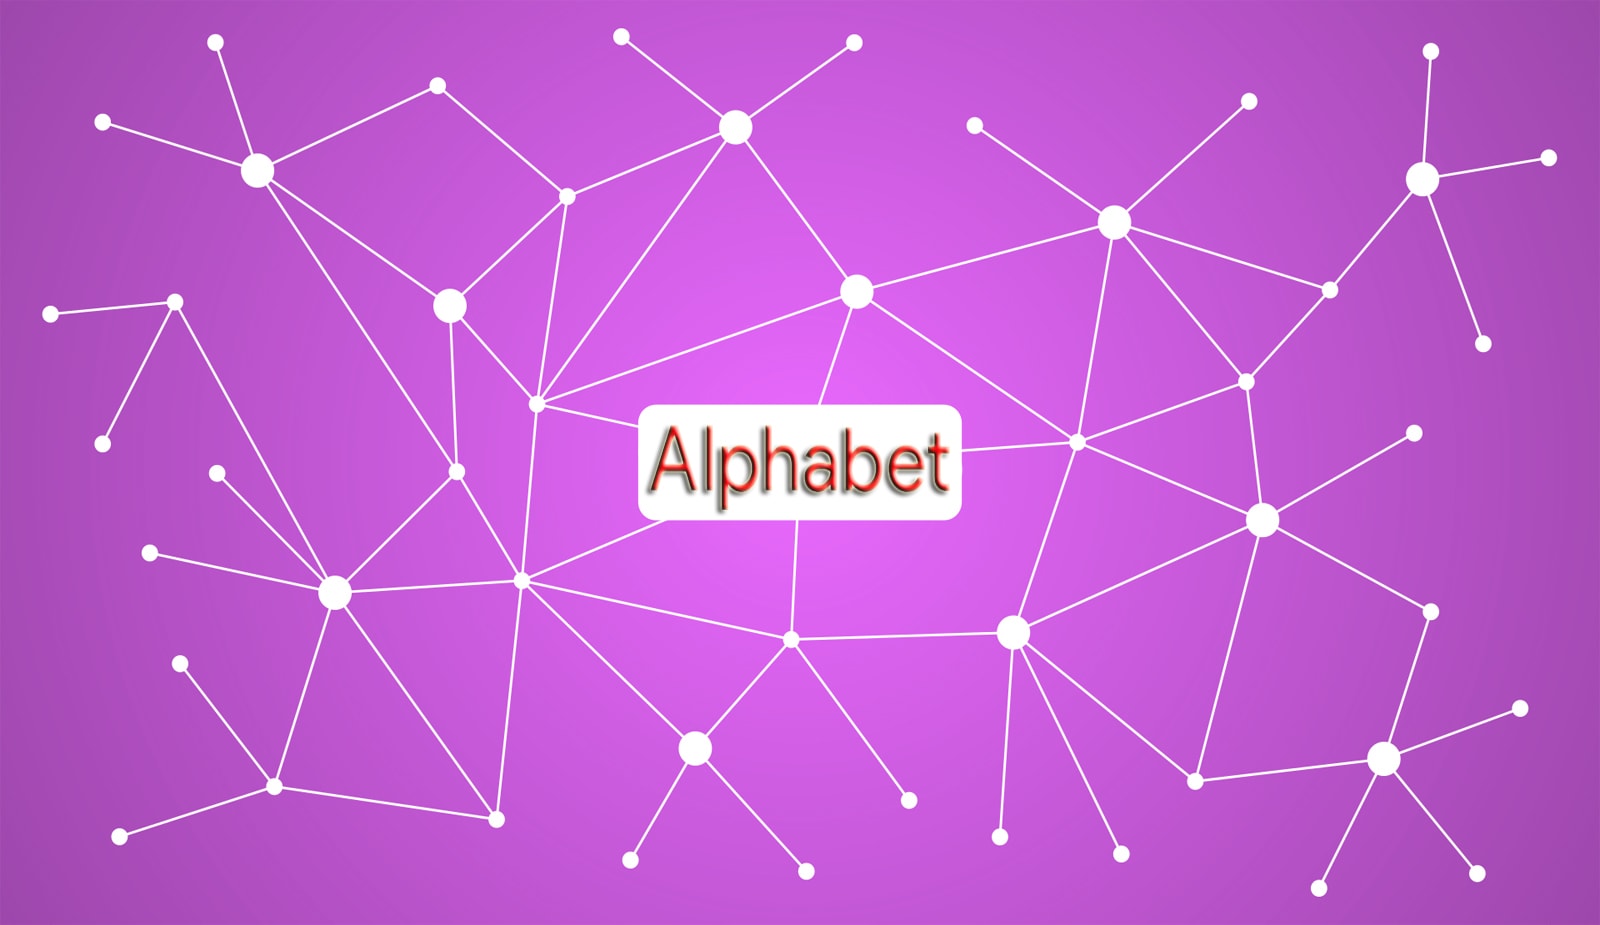 Alphabet инвестировал $1,5 млрд в криптовалюту